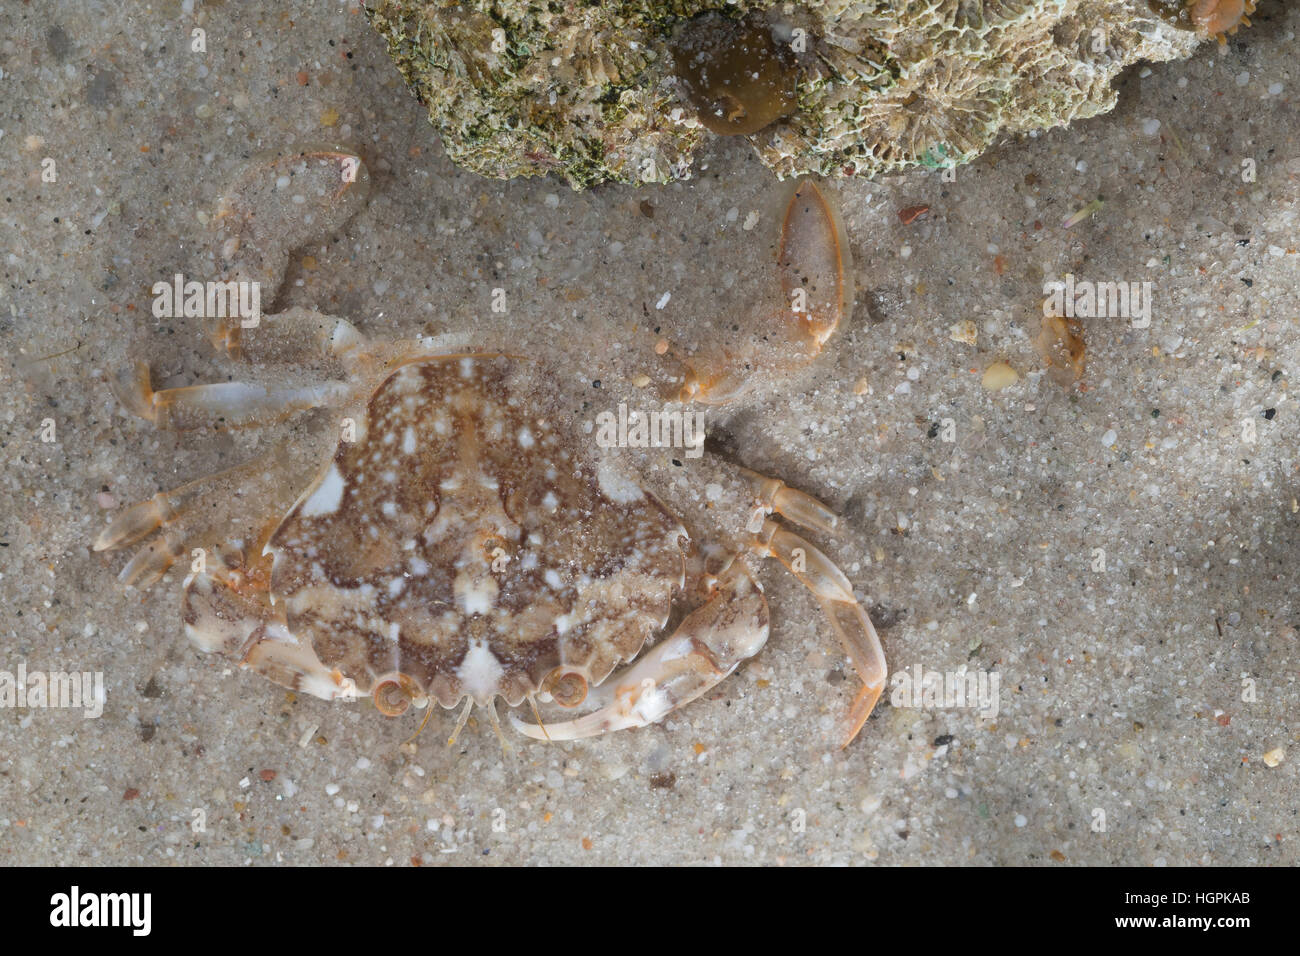 Marmorierte Schwimmkrabbe, Liocarcinus marmoreus, Portunus marmoreus, marbled swimming crab, Le Portune marbré Stock Photo